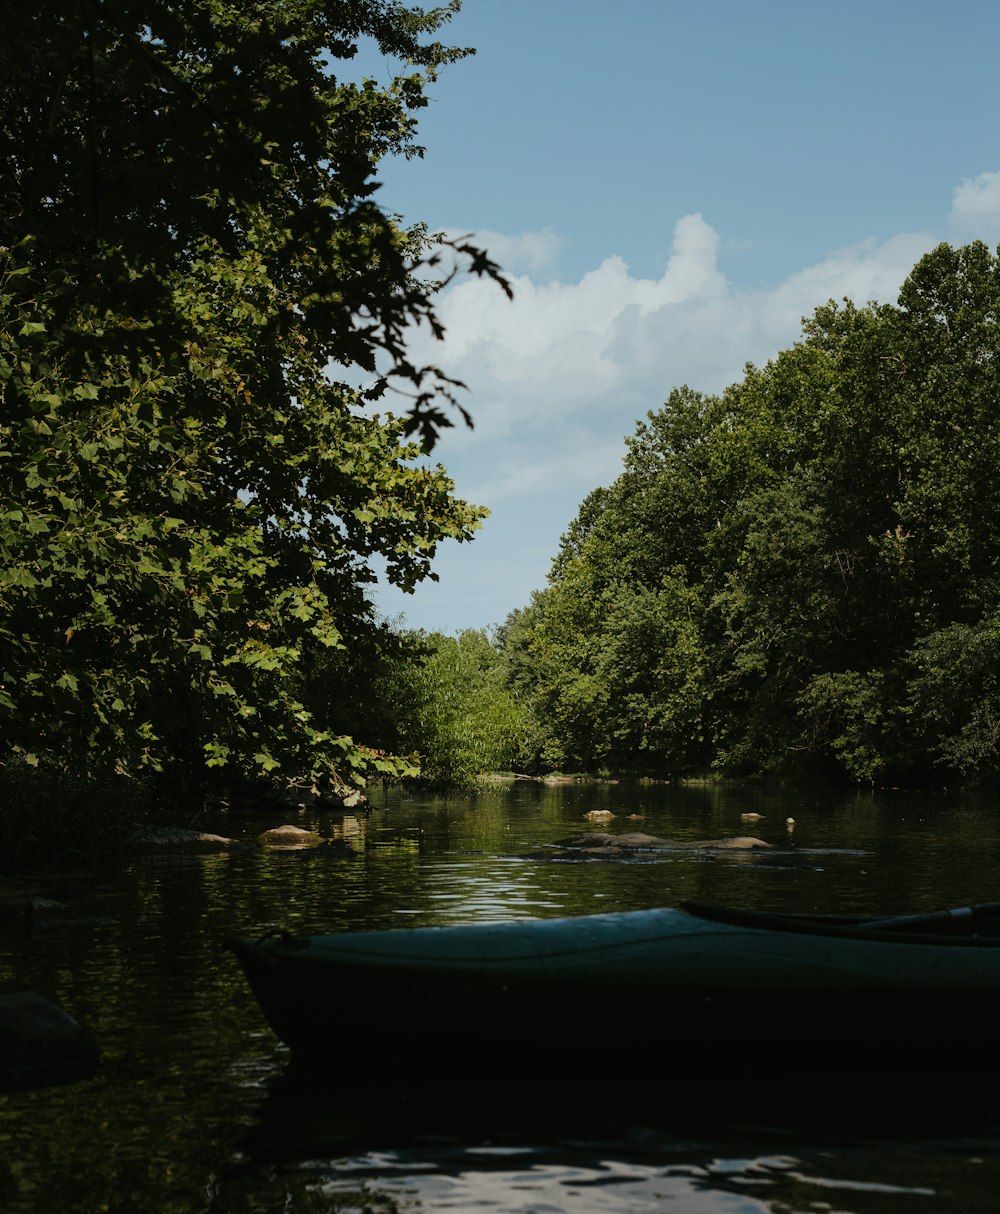 Bateau bleu sur la rivière entre les arbres verts pendant la journée